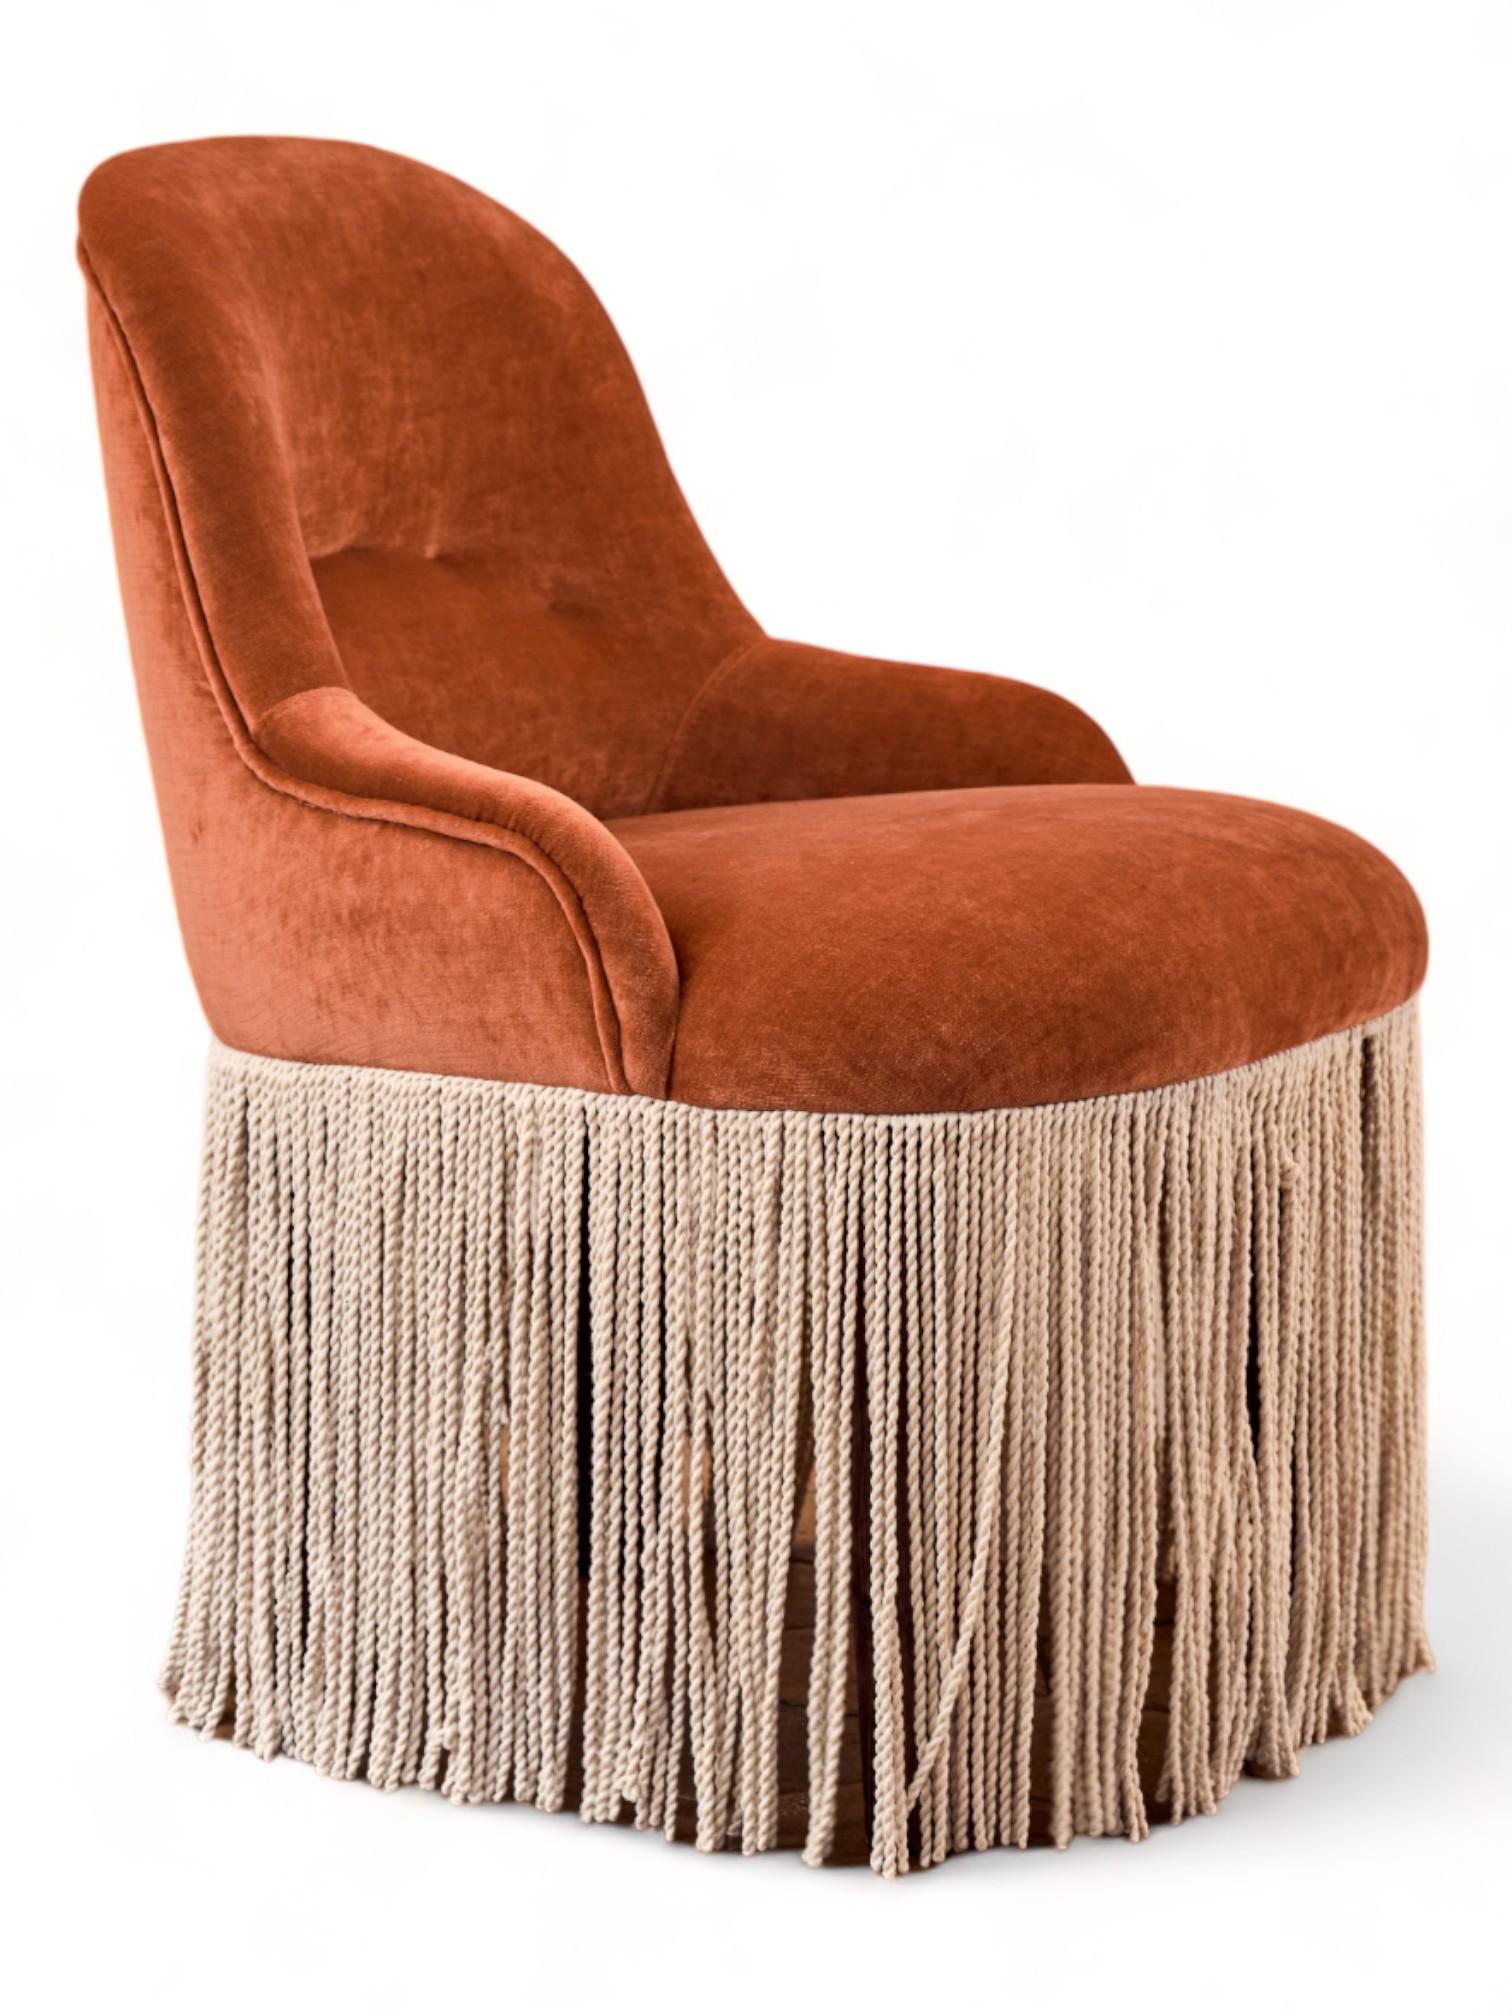 Explorant l'élégance intemporelle et le confort exceptionnel, la chaise de style fauteuil conçue par Quintana Partners est un chef-d'œuvre qui fusionne parfaitement le style classique avec une touche contemporaine. Cette pièce unique est plus qu'un